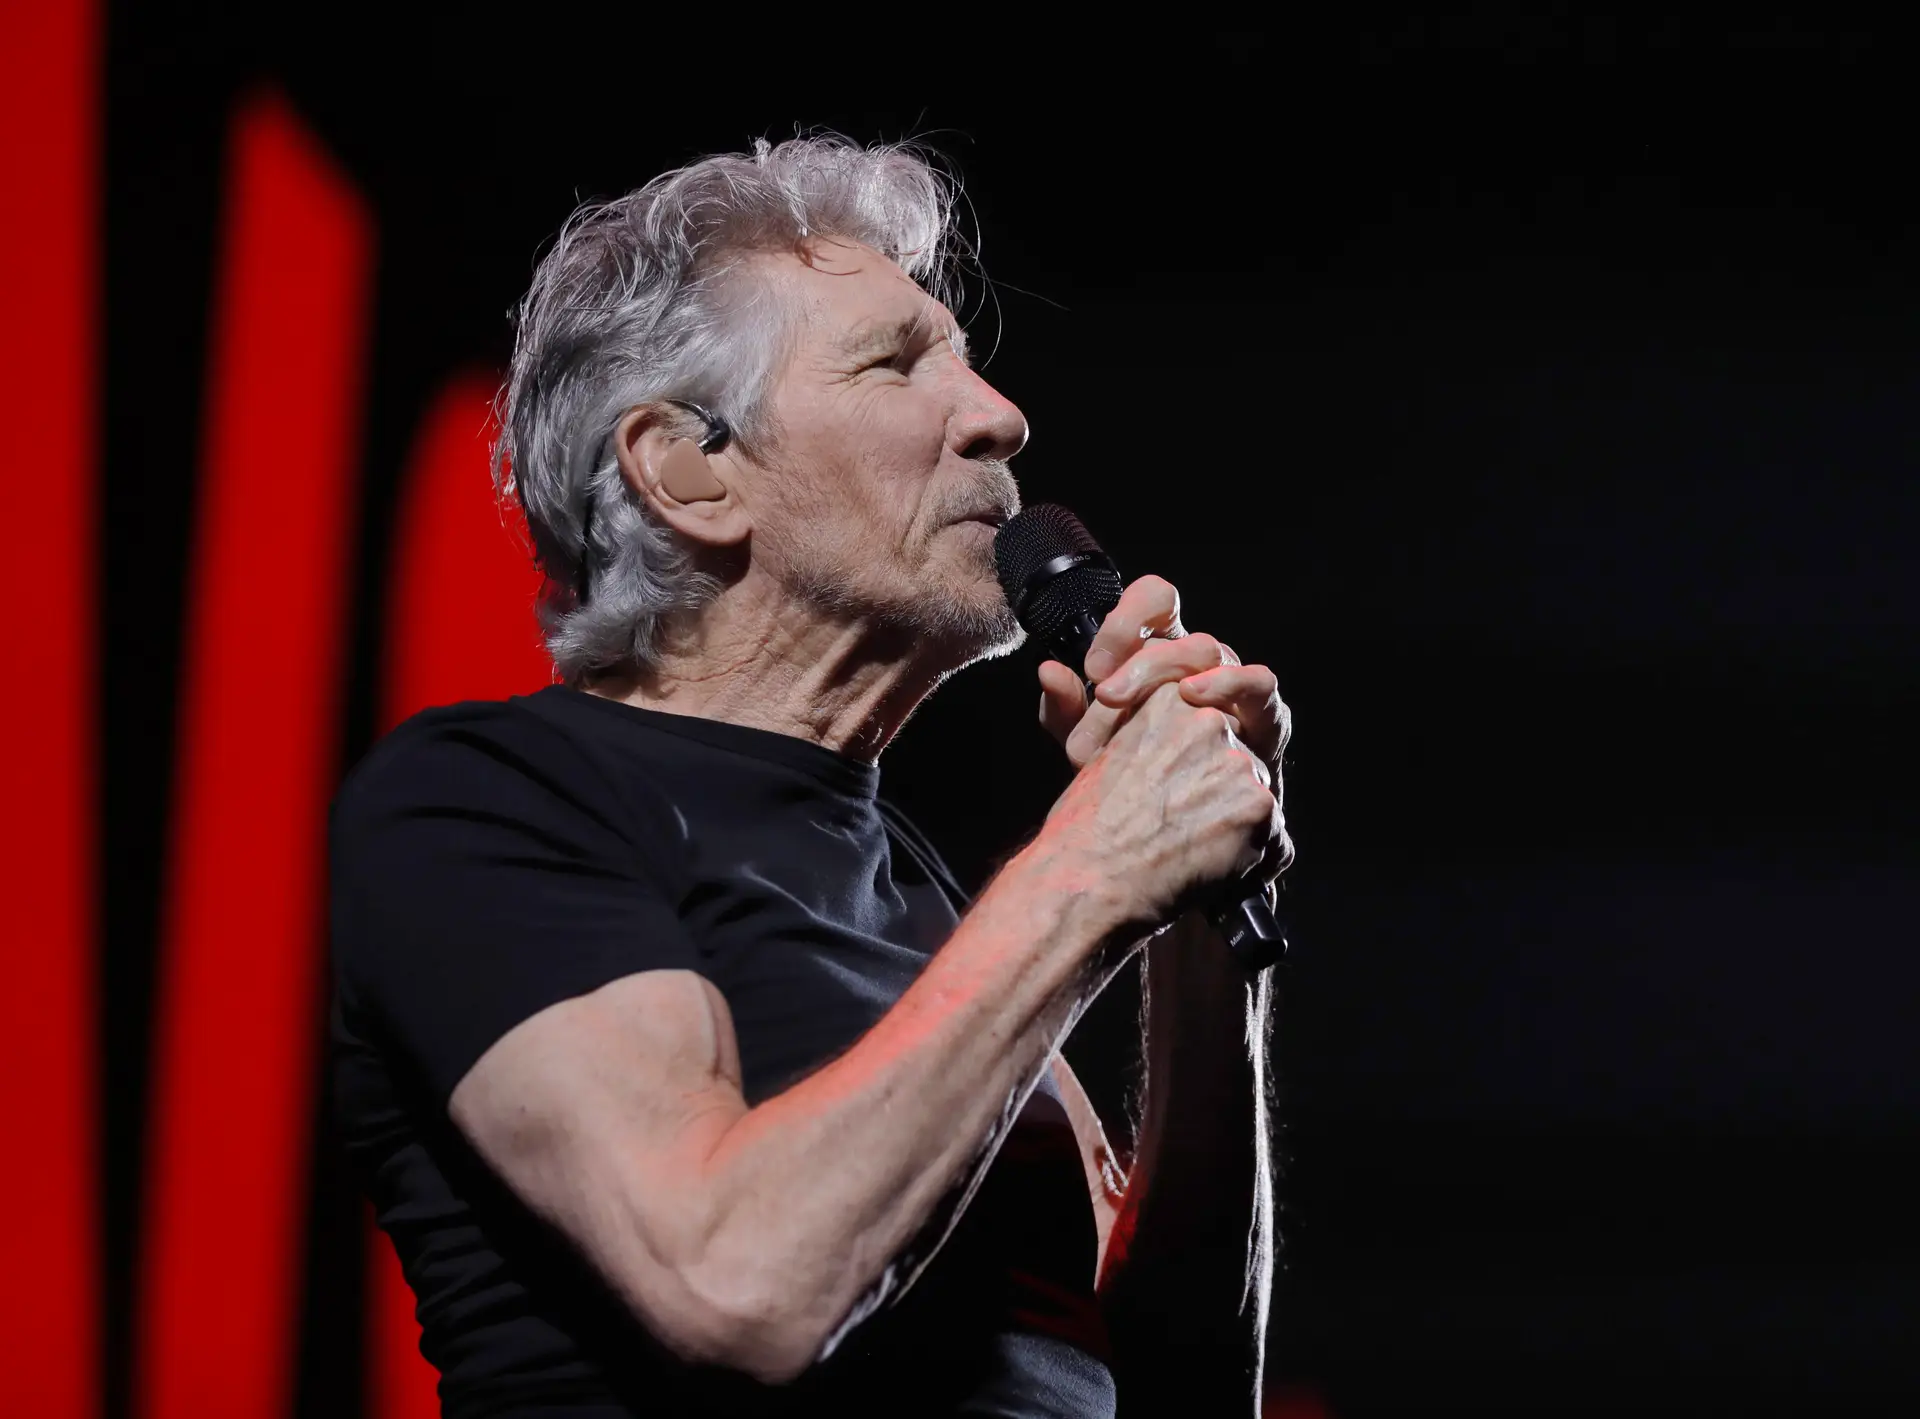 Comunidade Israelita de Lisboa “profundamente desagradada” com concertos de Roger Waters